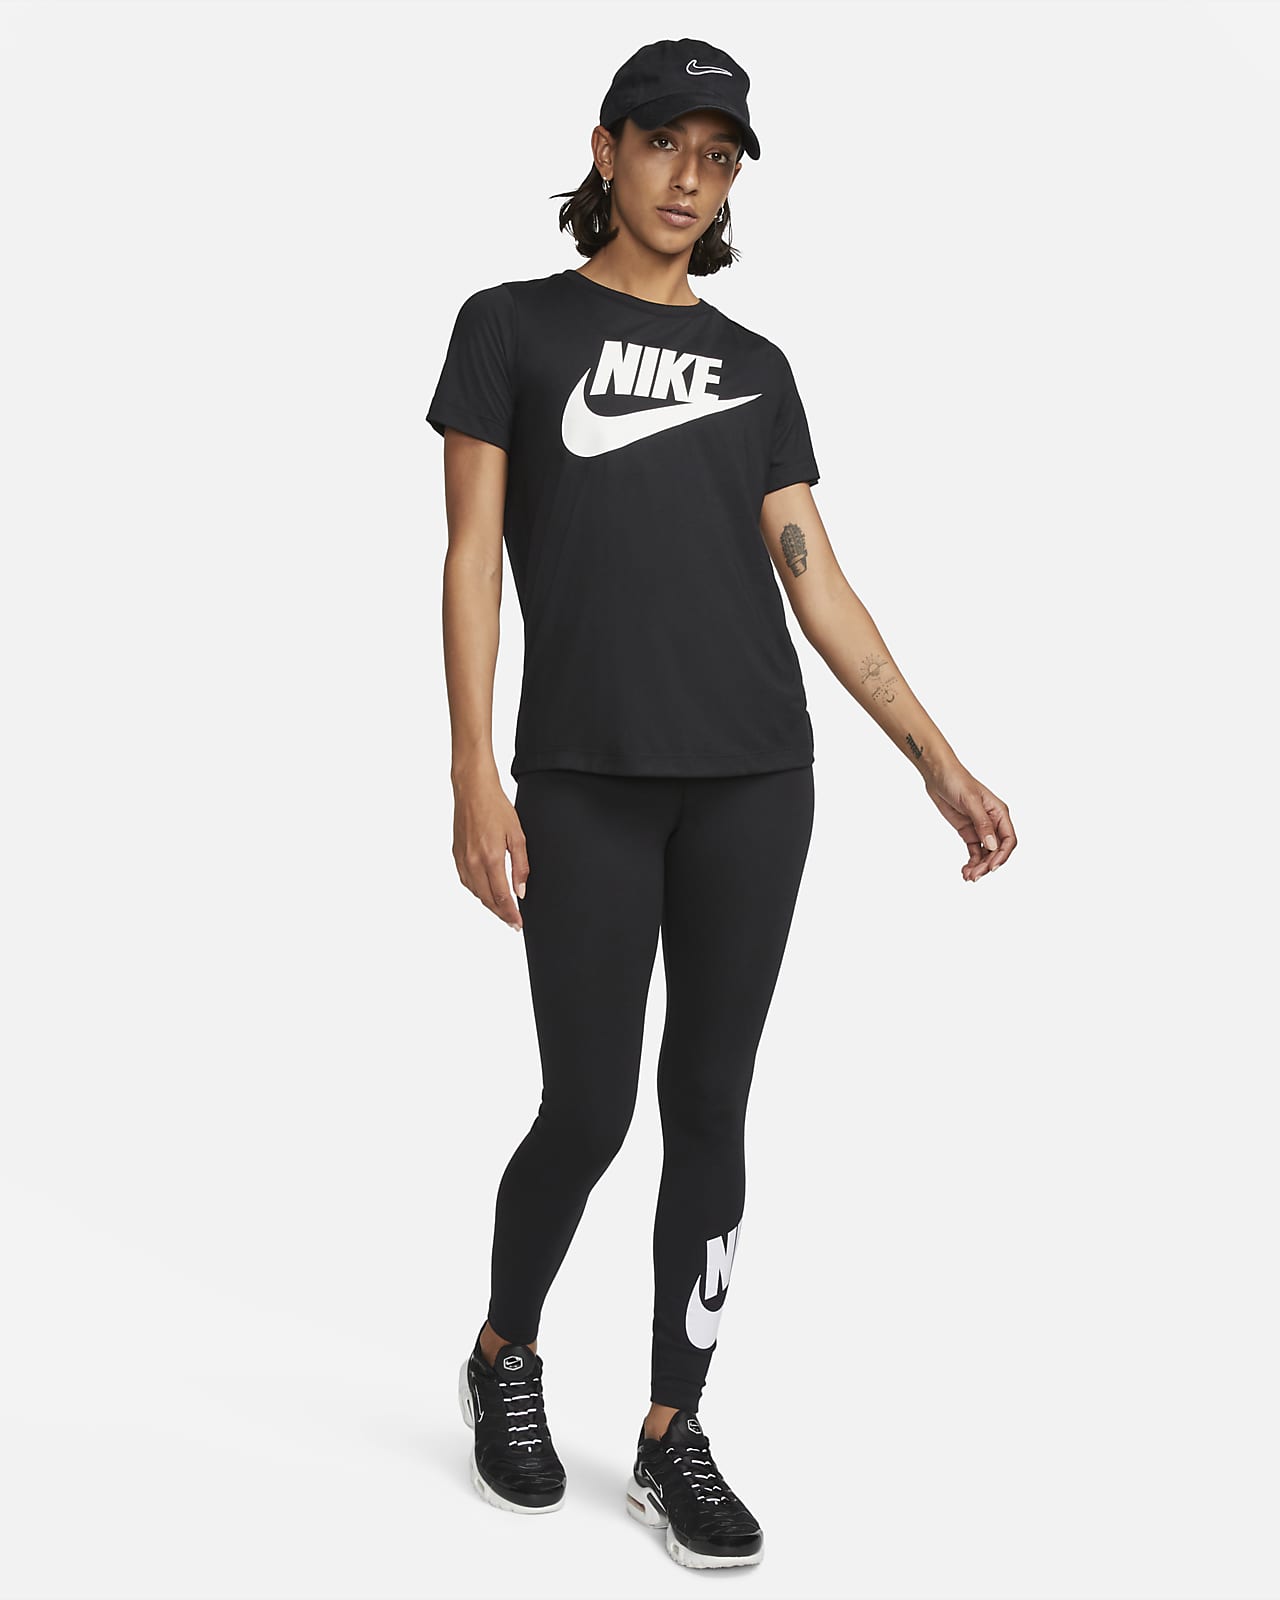 Leggings Nike Sportswear Women's High-Rise Leggings Black/ White